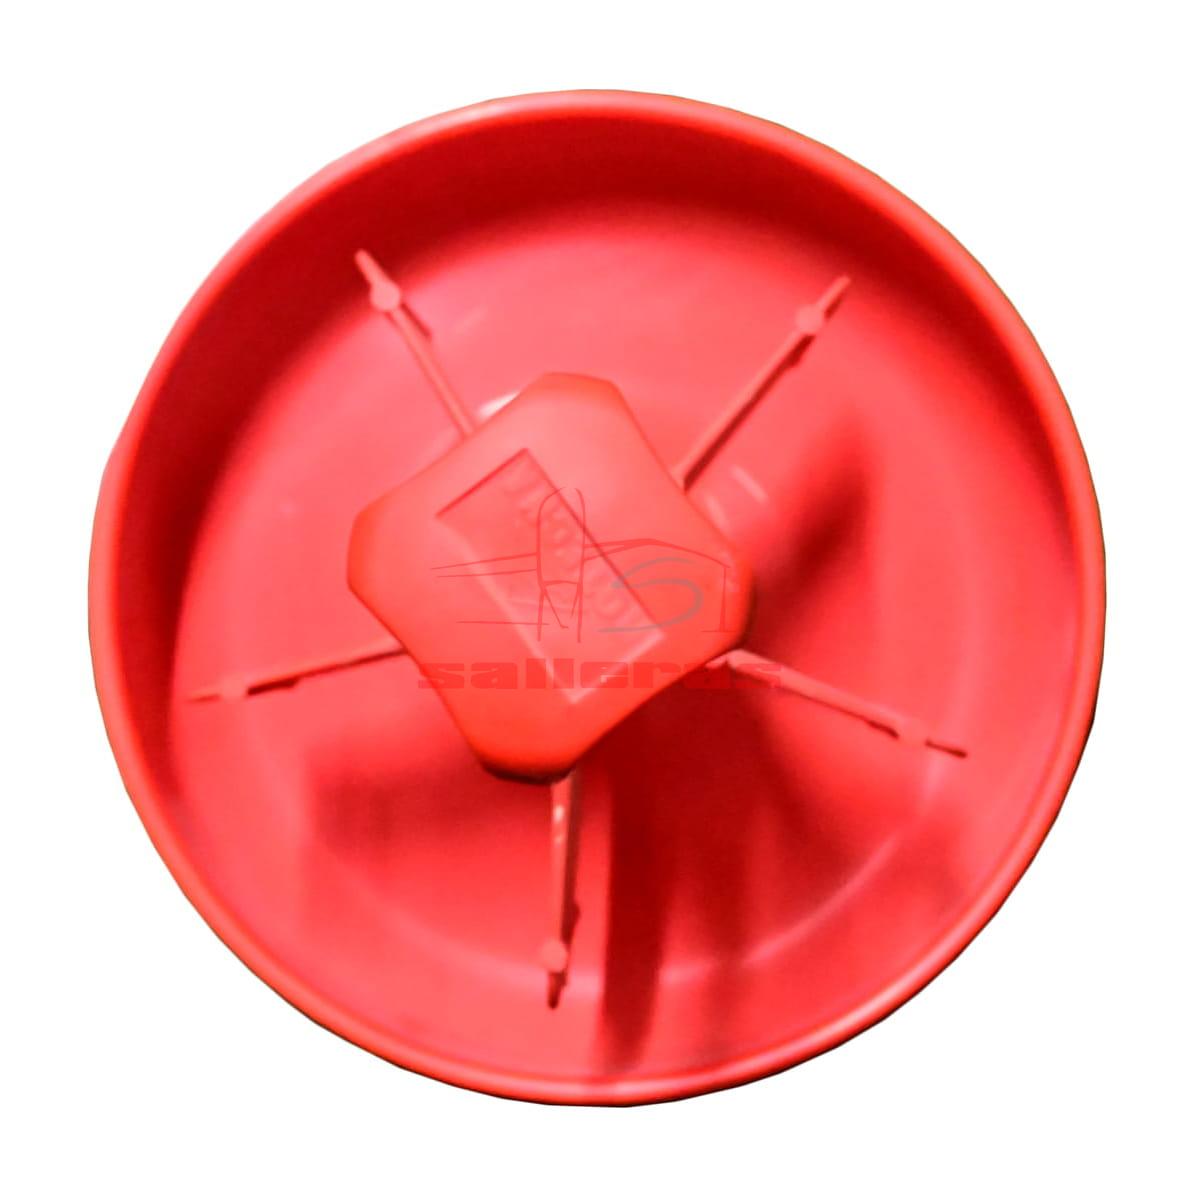 Plato recipiente para tolva de color rojo reves